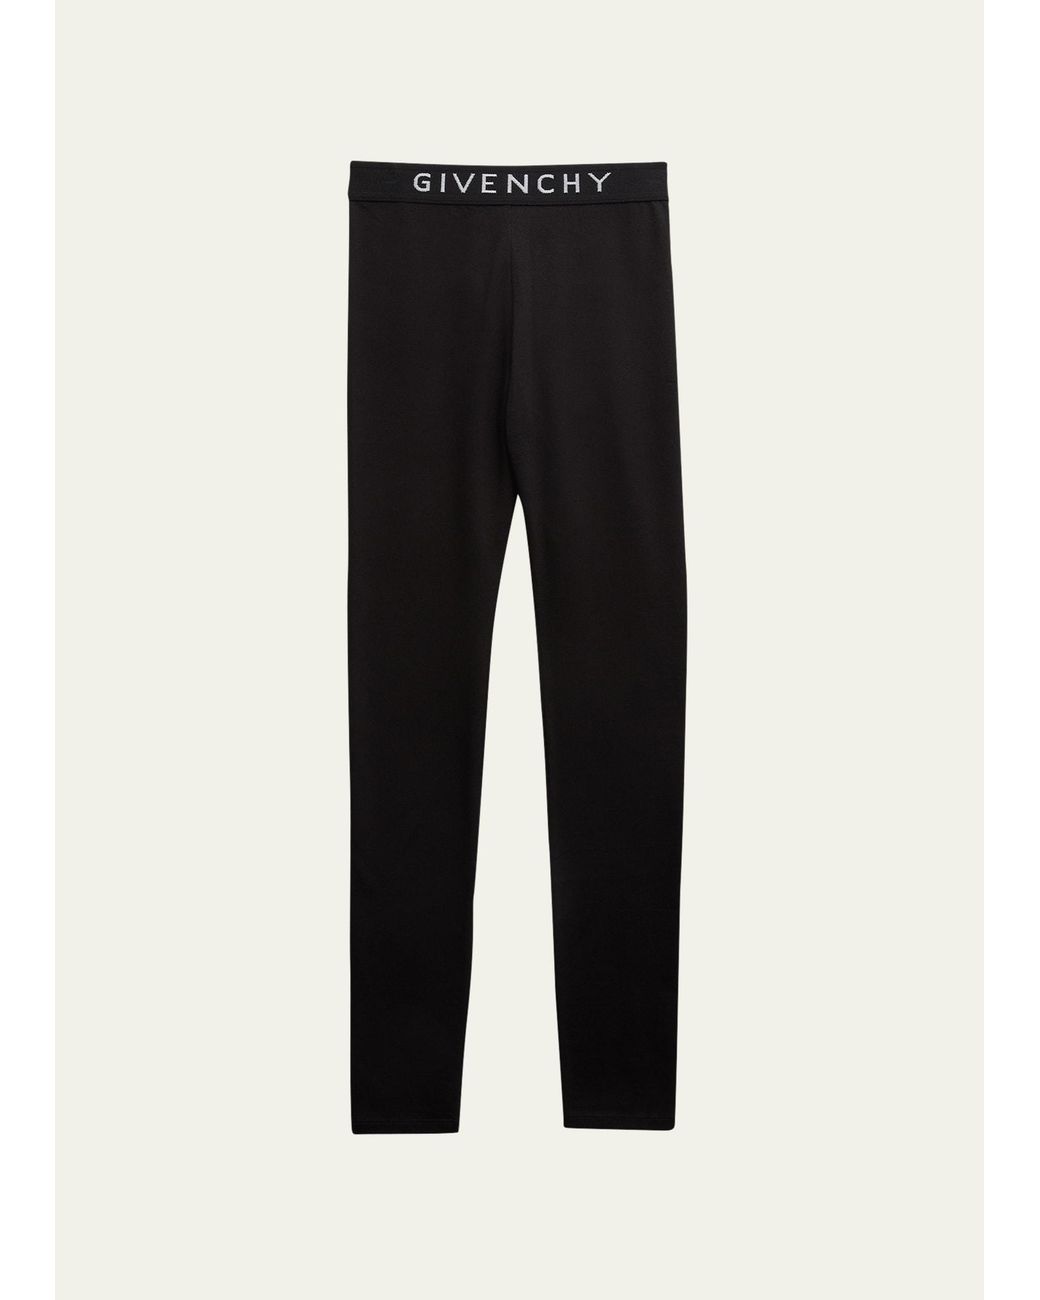 Givenchy Girl's Logo Tape Waistband Leggings in Black | Lyst